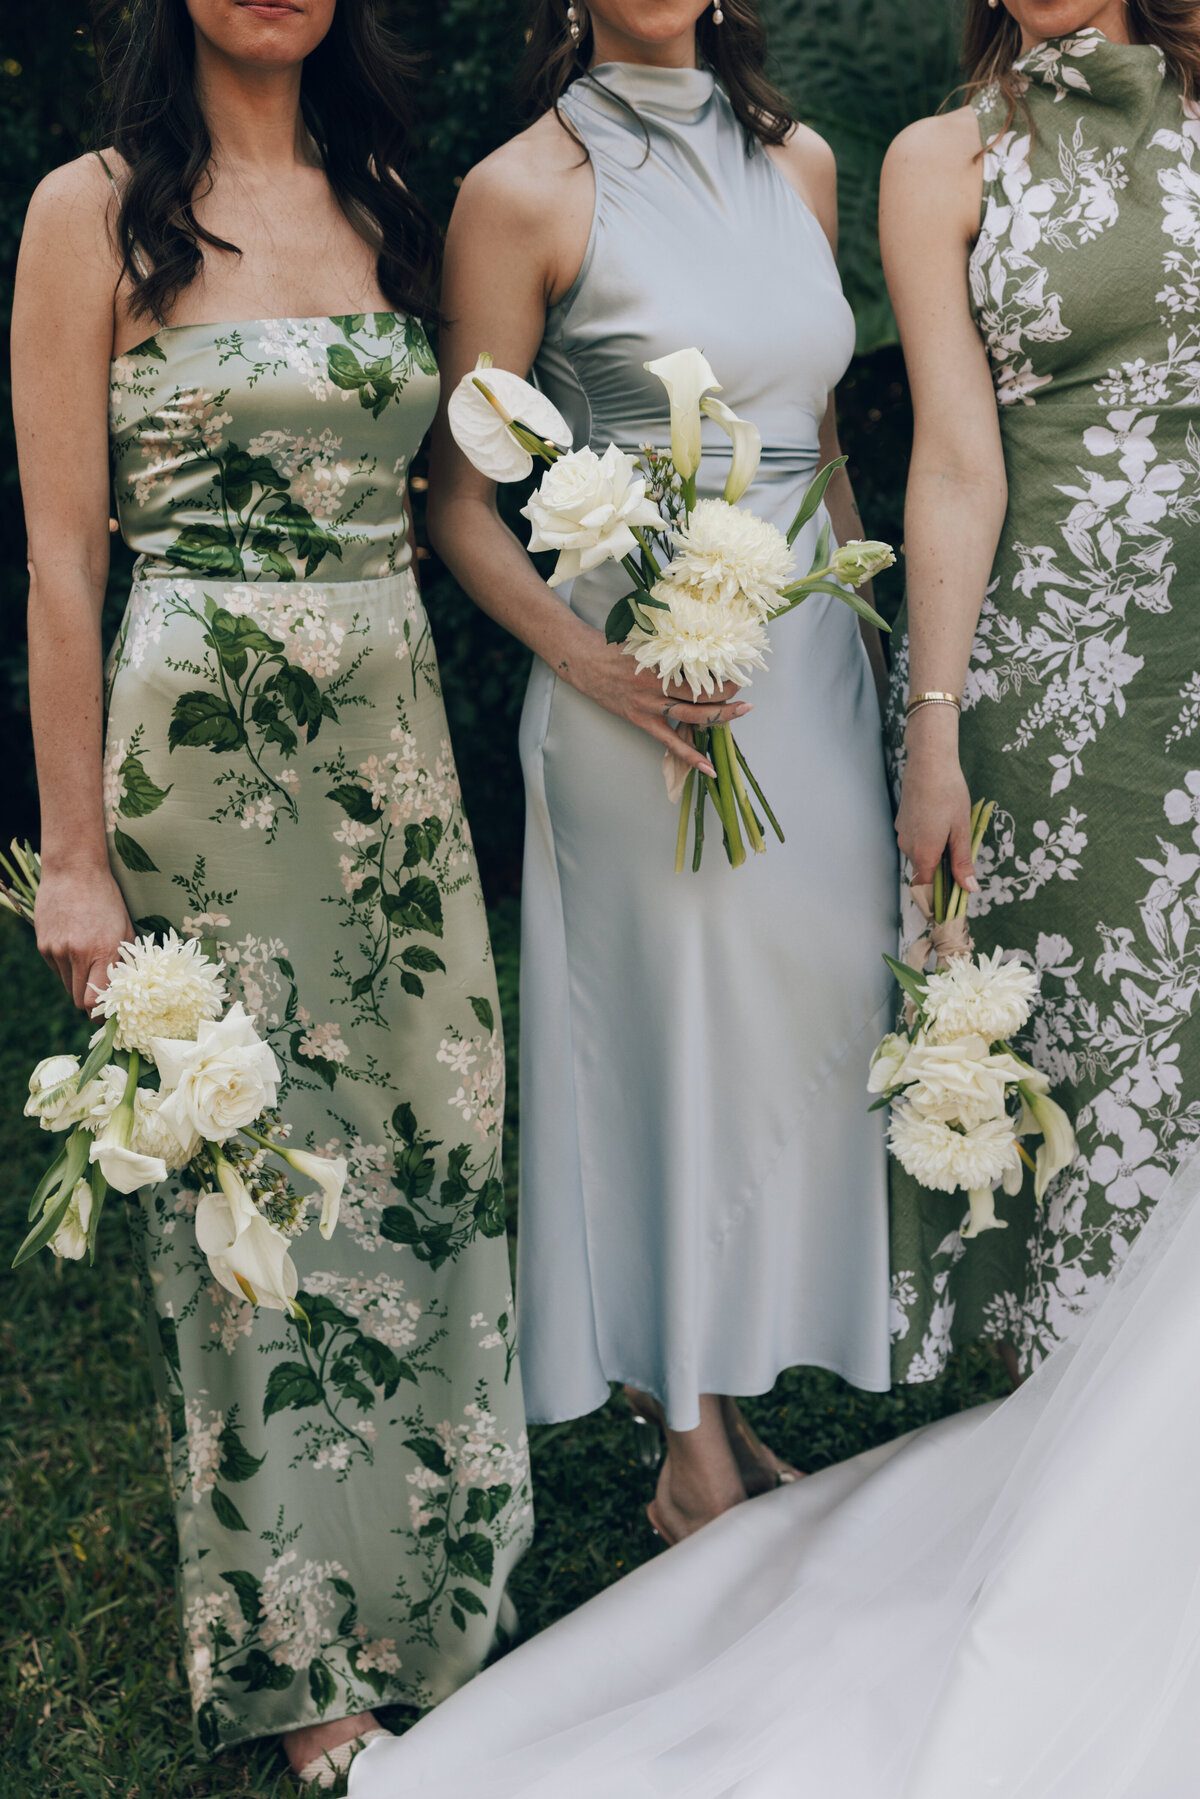 fairchild-botanical-garden-anti-bride-wedding-miami-florida-59